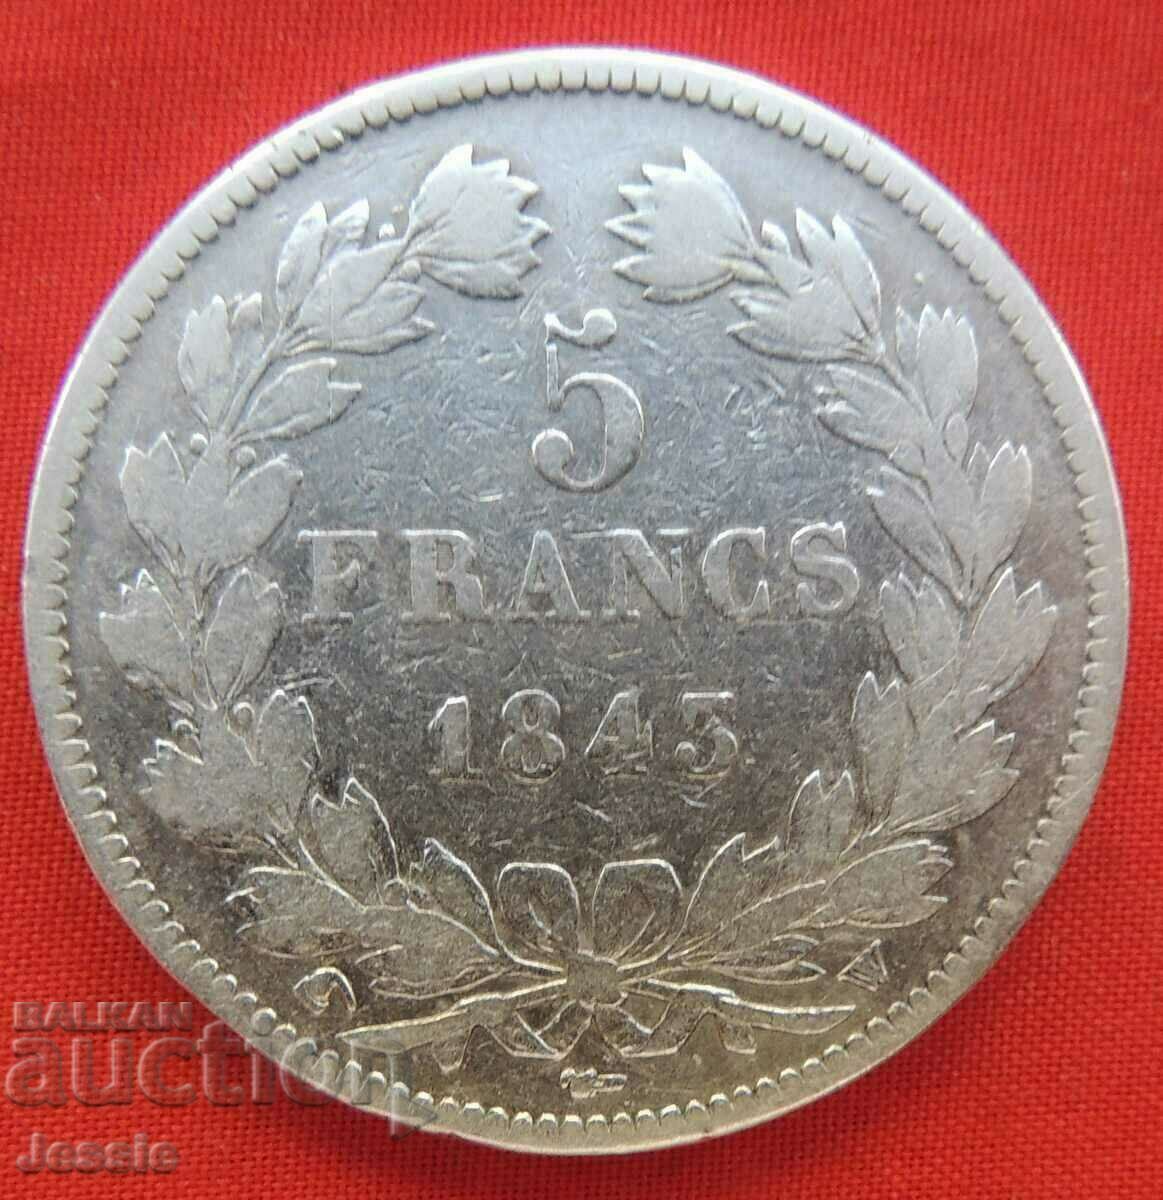 5 Franci 1843 W argint Franta